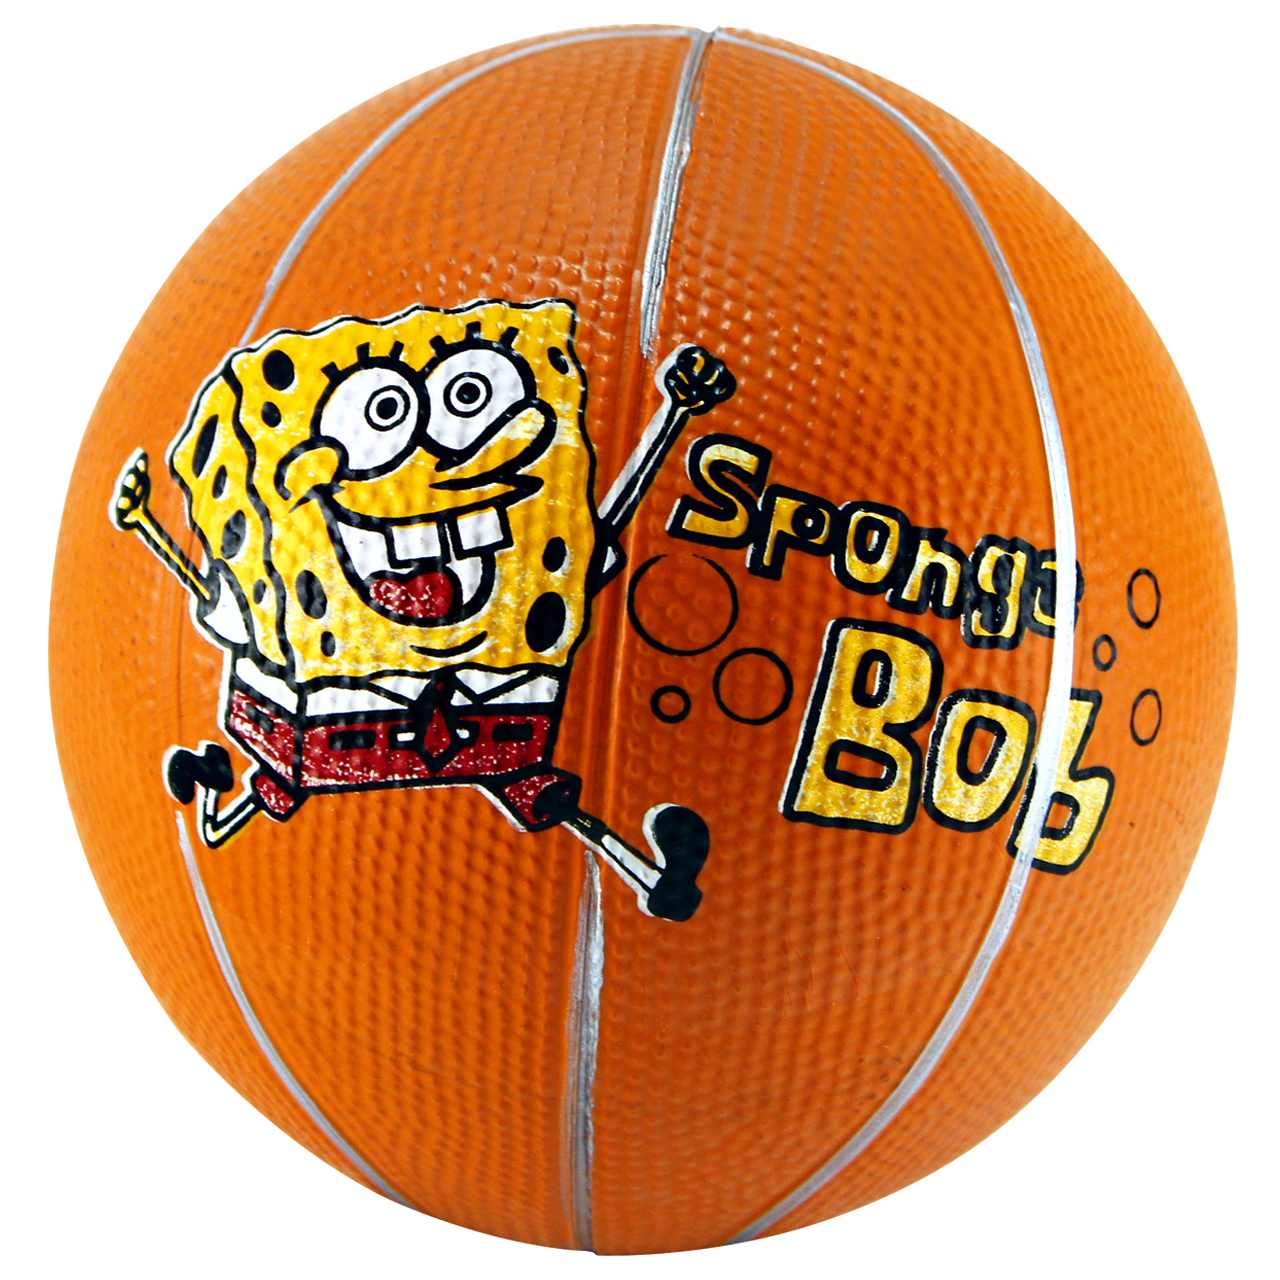 مینی توپ بسکتبال مدل Sponge Bob کد 14070018 سایز 3